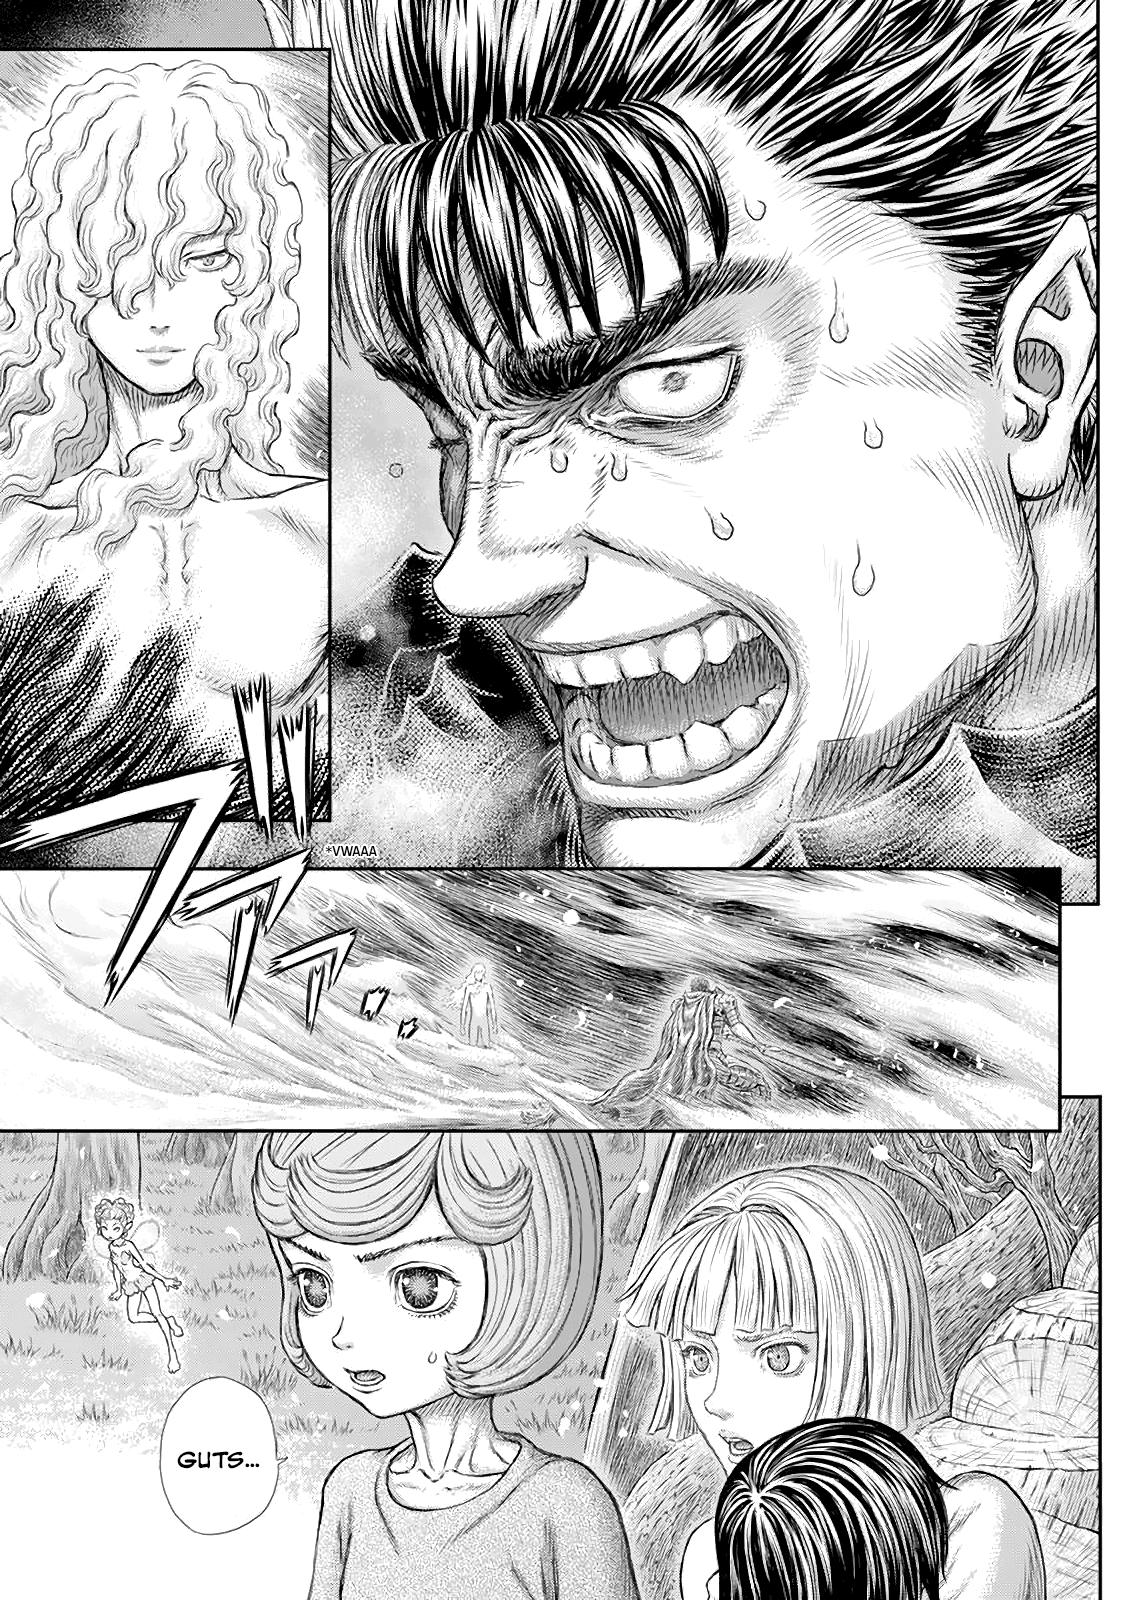 Berserk Manga Chapter 366 image 11